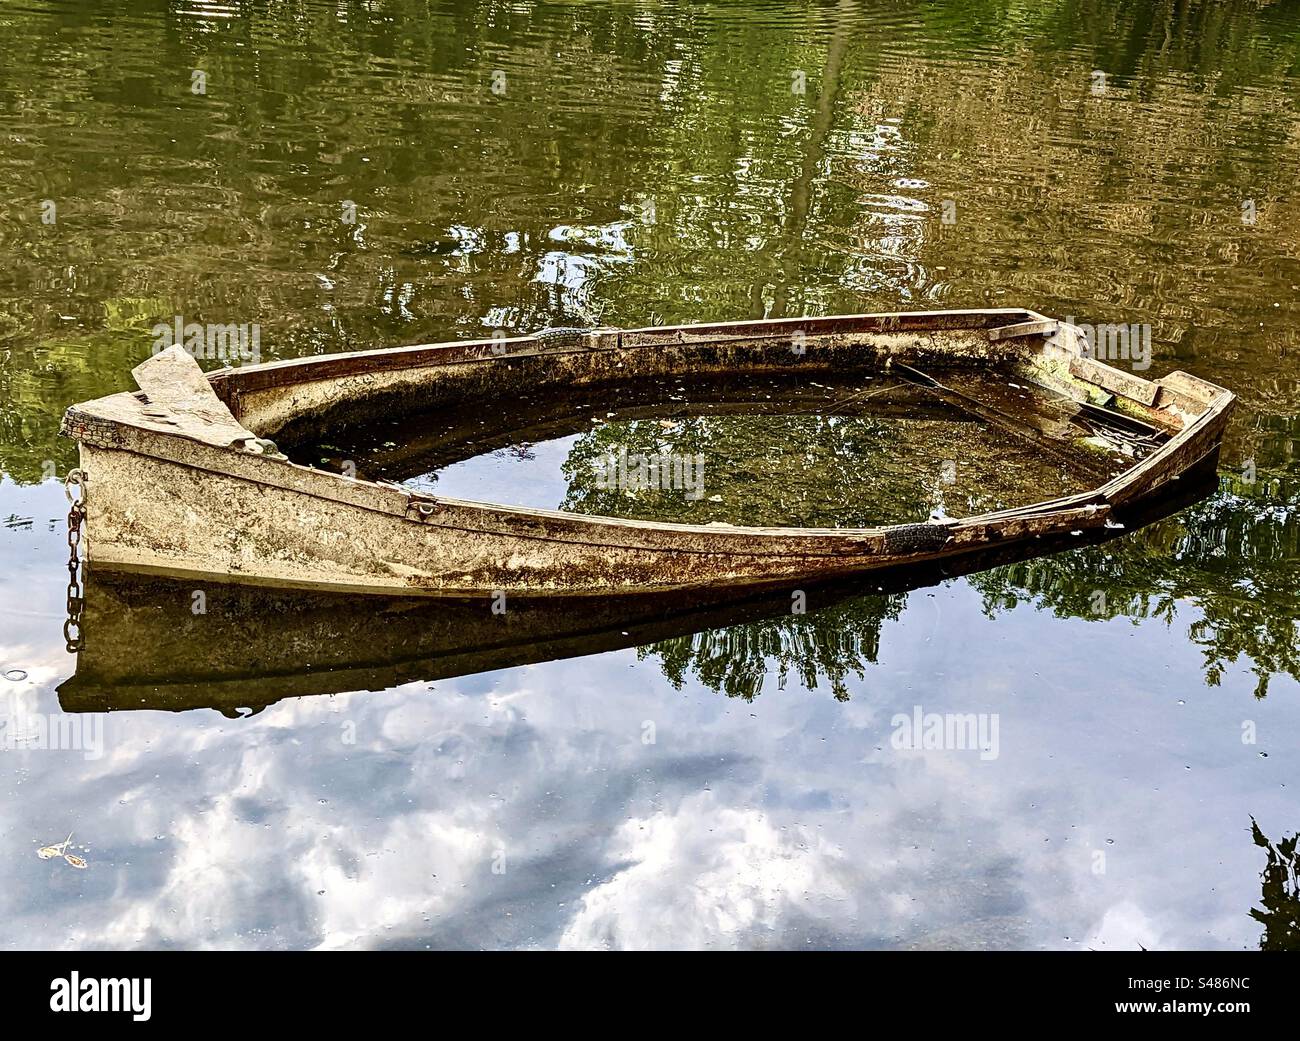 Una barca abbandonata piena d'acqua, tra riflessi nuvolosi Foto Stock